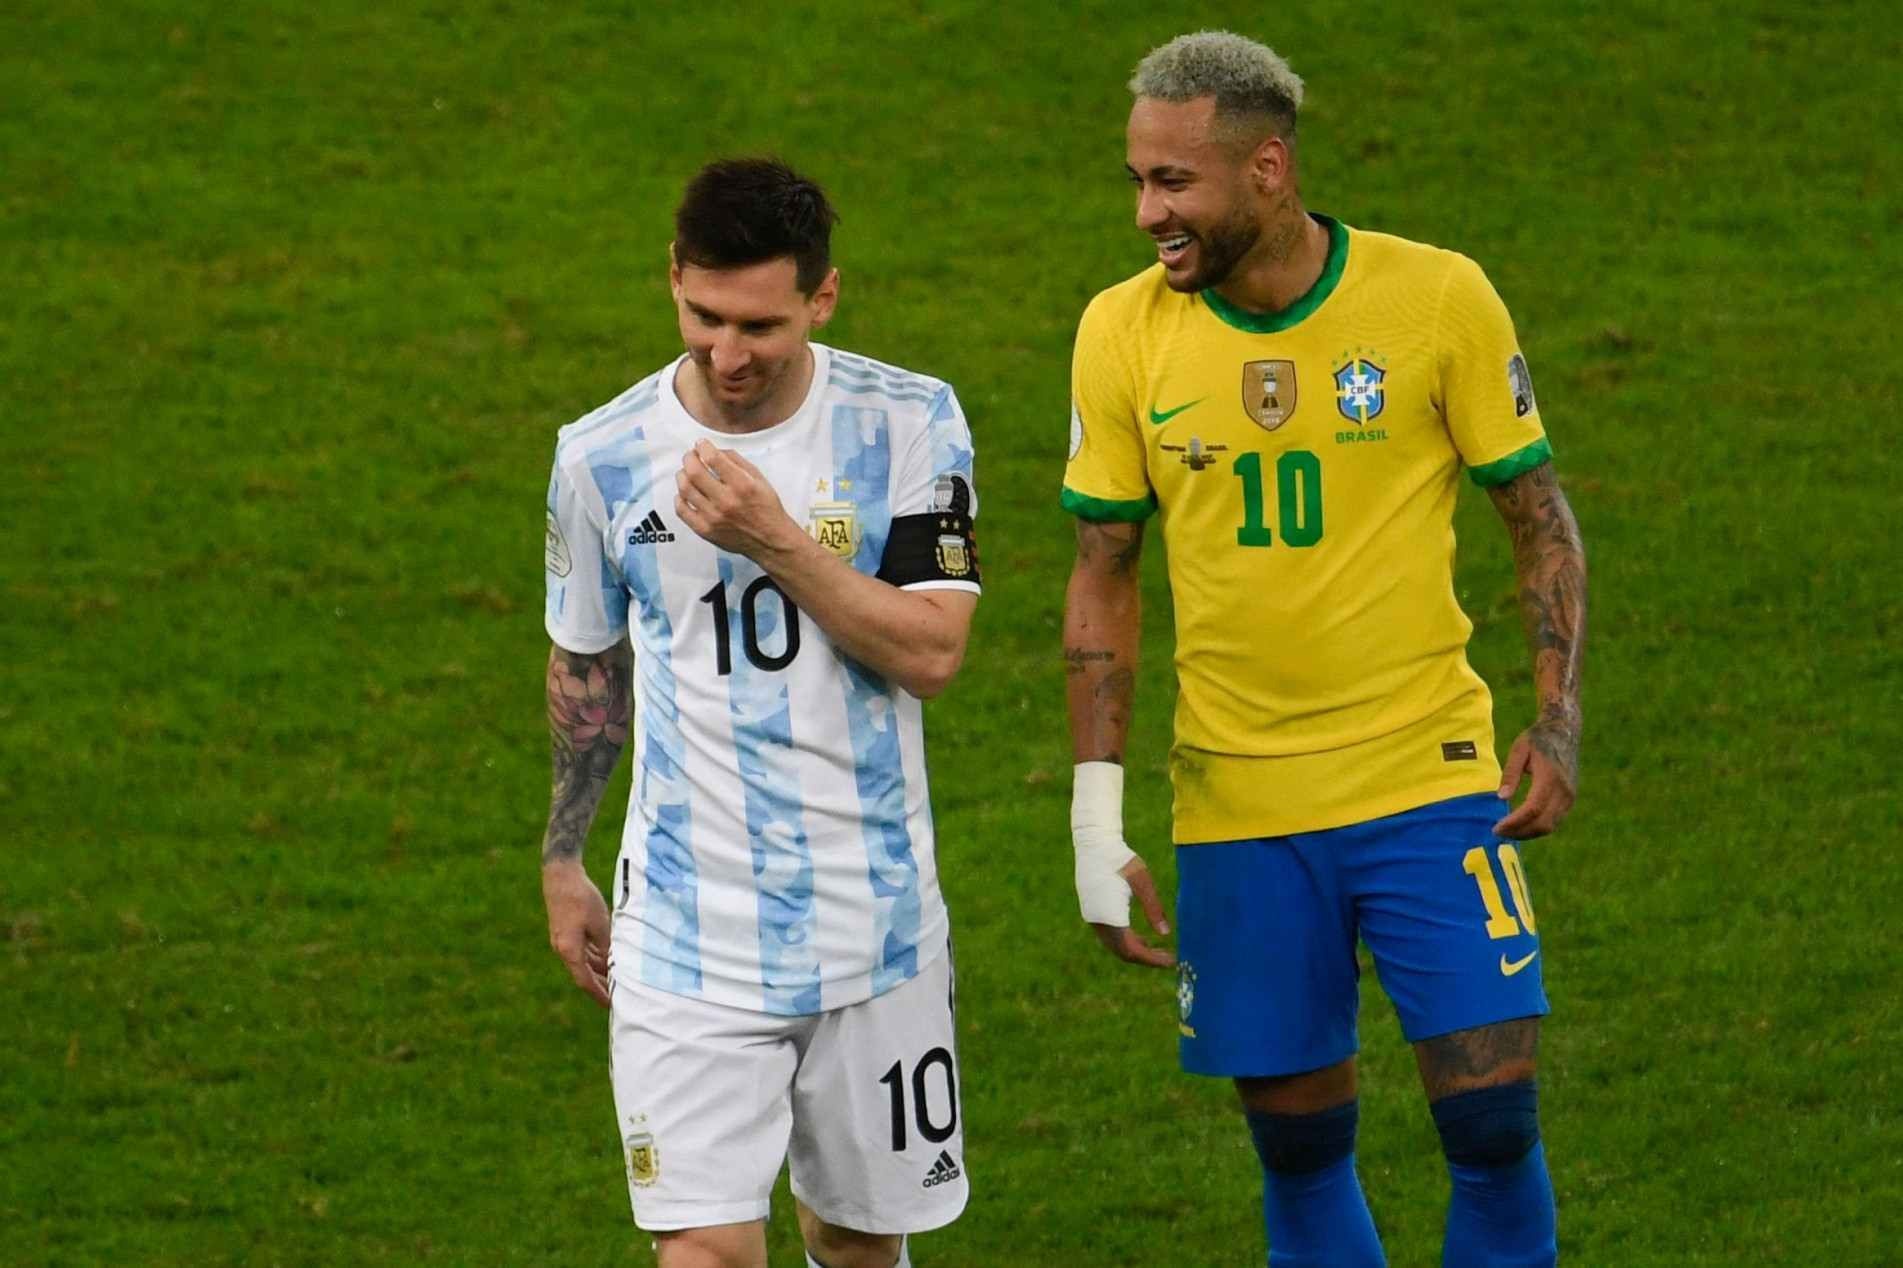 Em campo, um duelo entre as duas maiores estrelas do futebol sul-americano: Messi e Neymar.